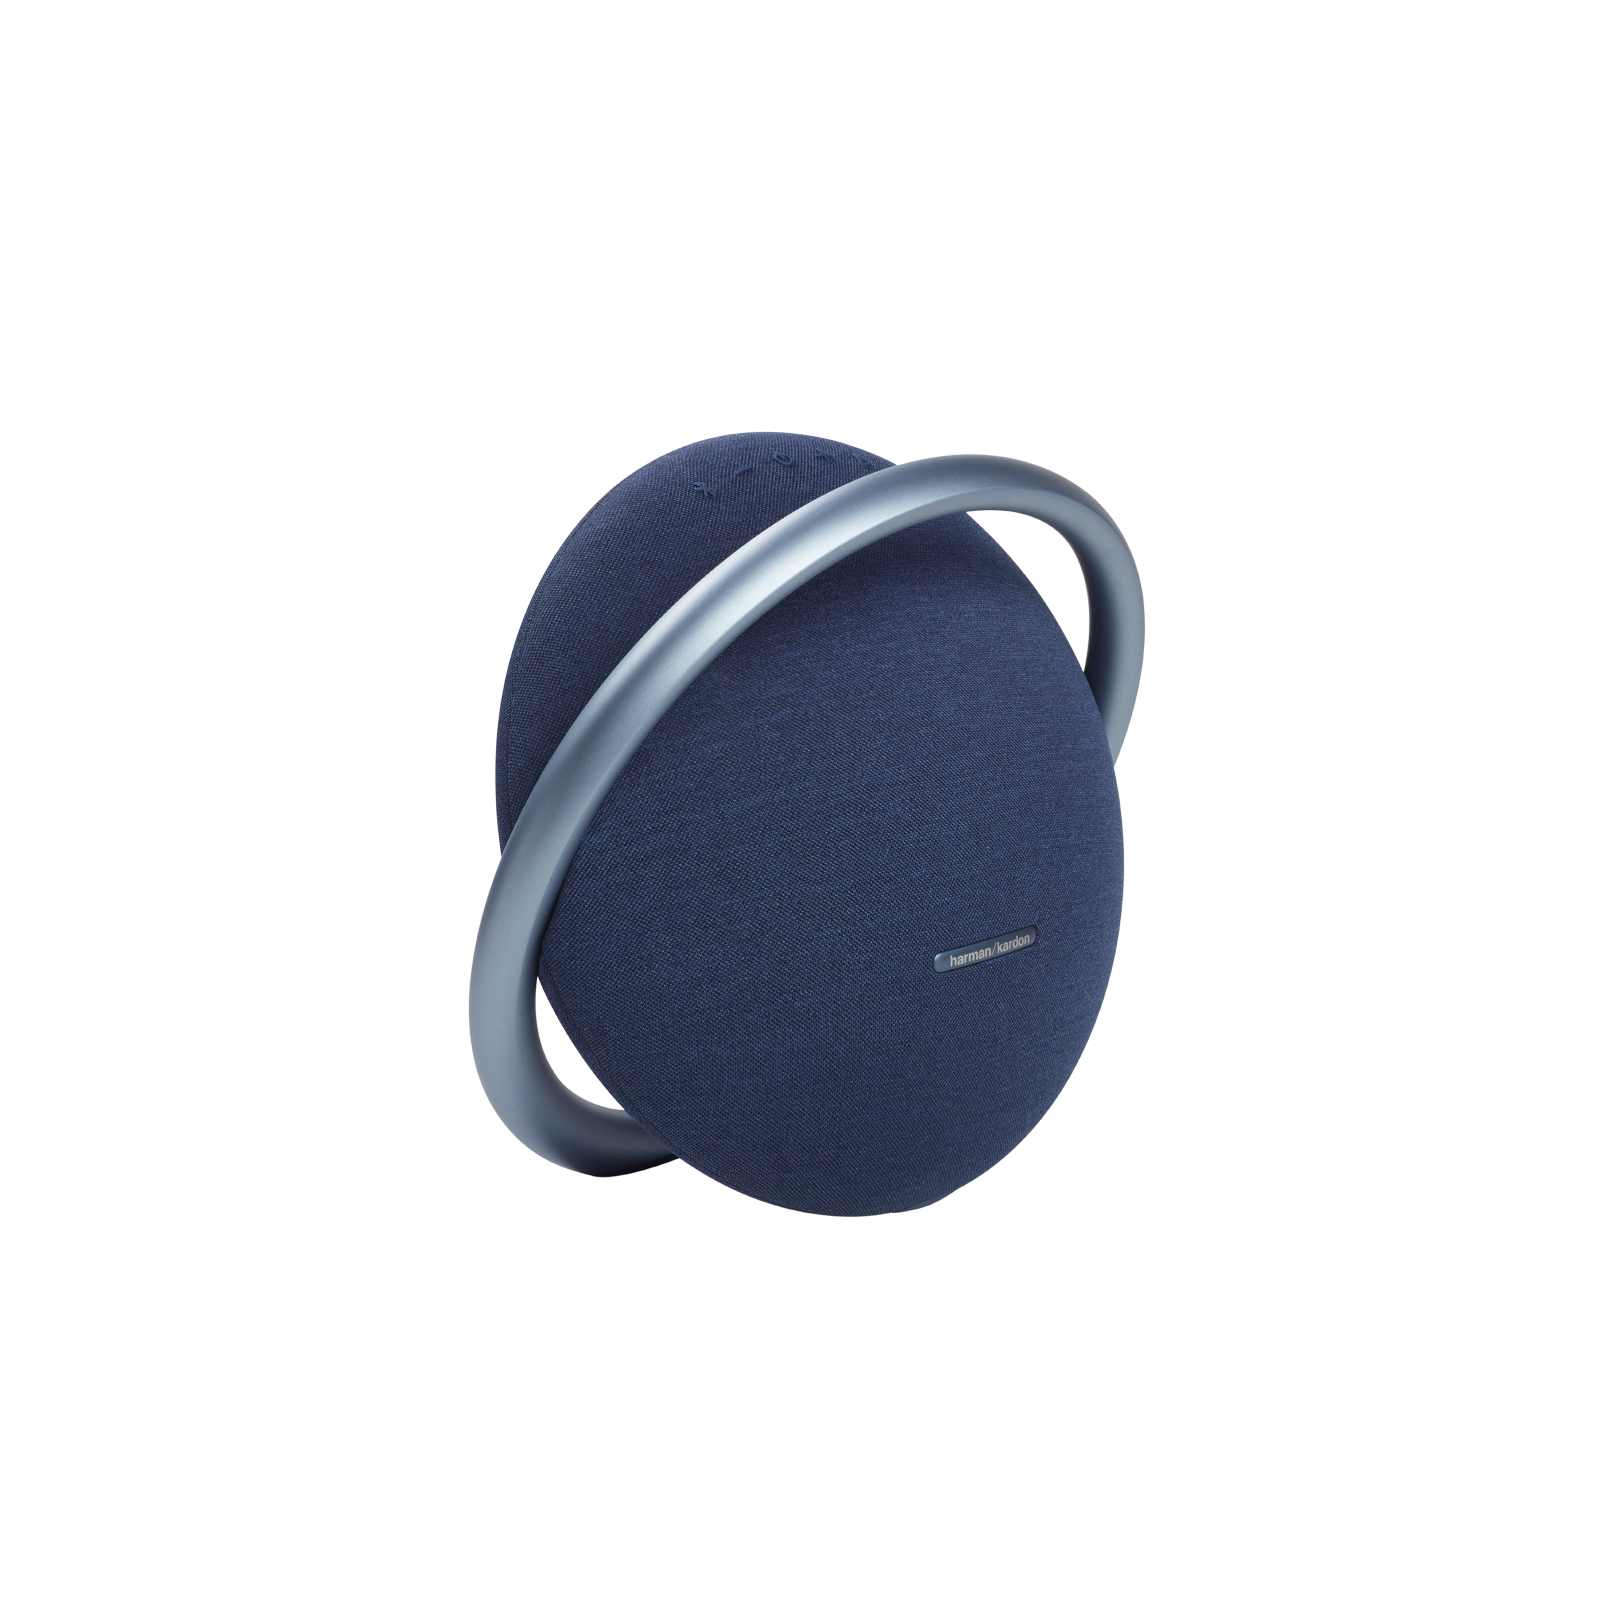 Onyx Studio 7 - Blue - Portable Stereo Bluetooth Speaker - Detailshot 1